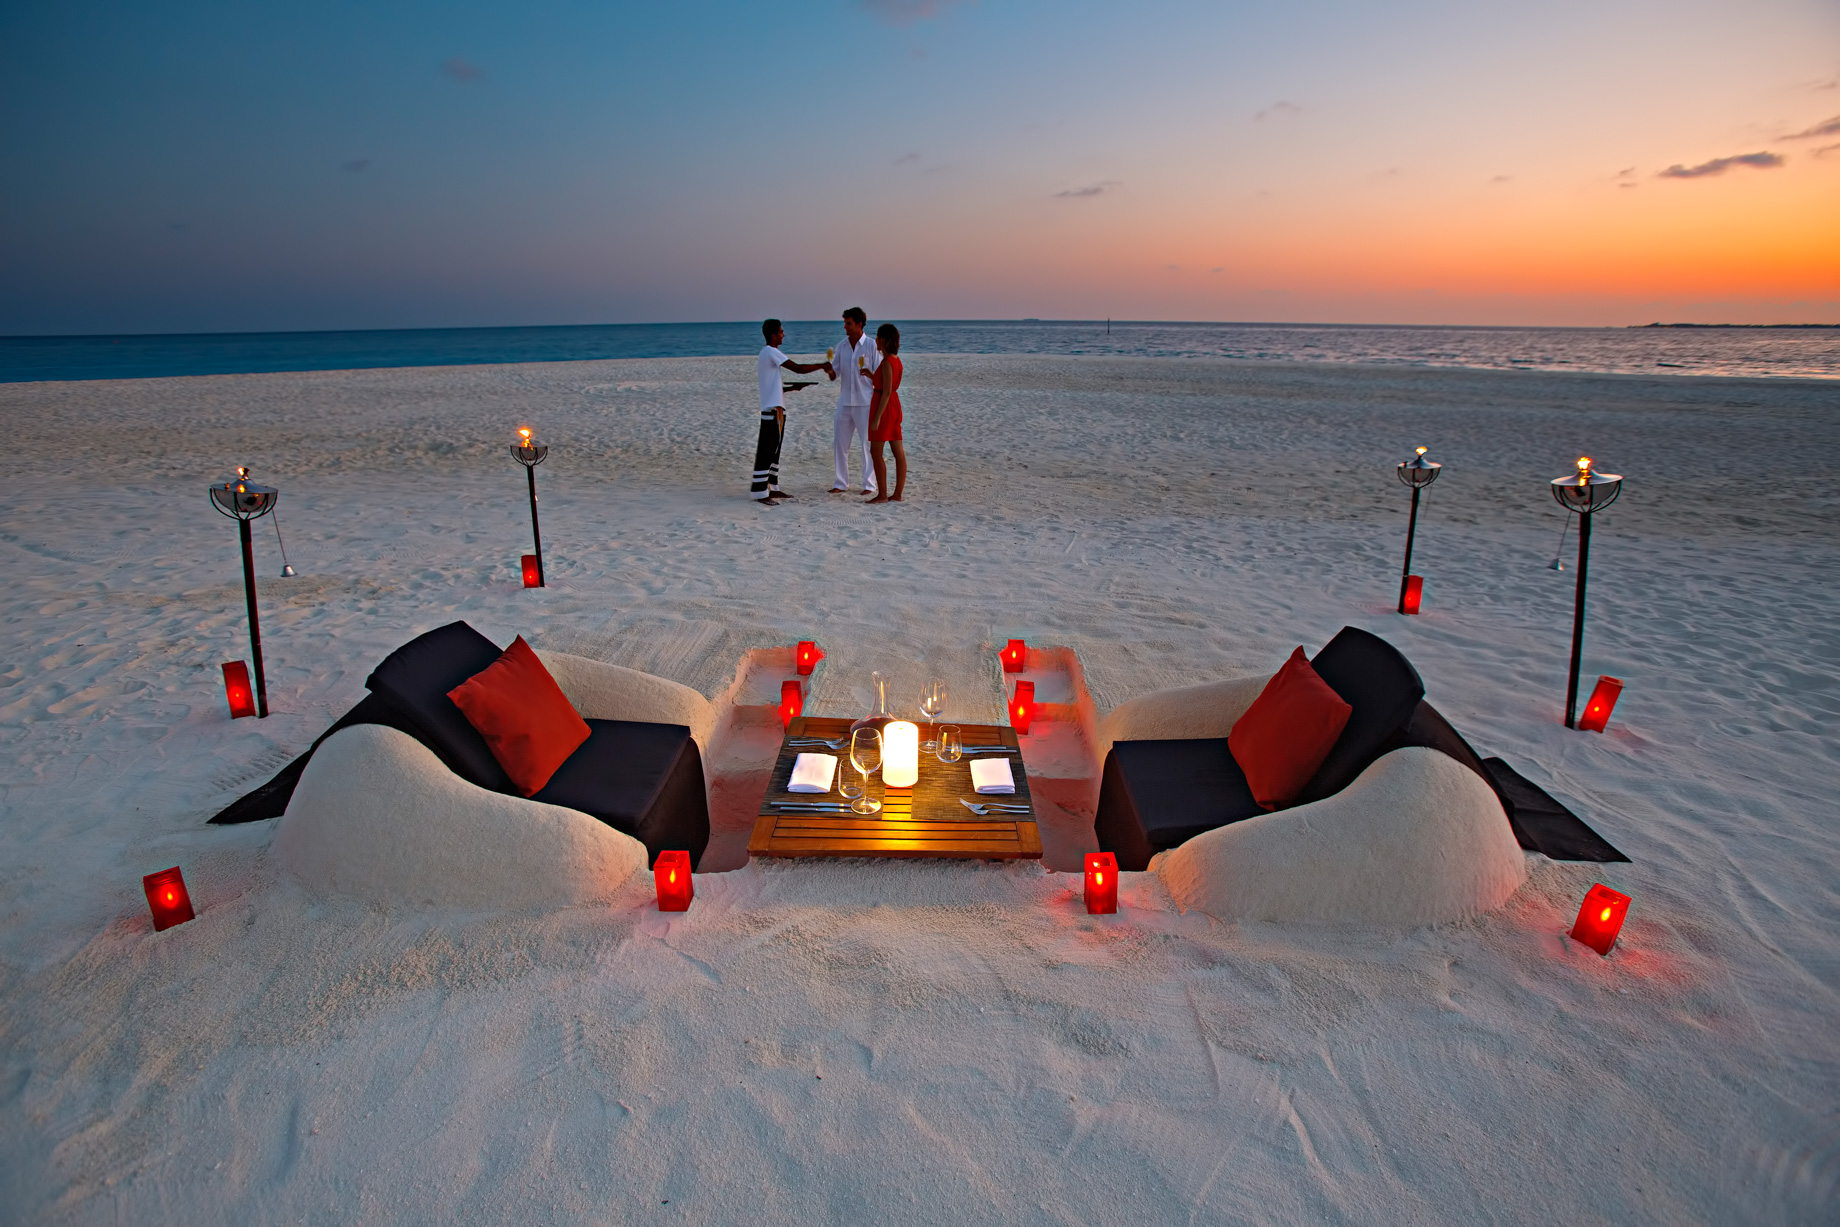 Velassaru Maldives Resort – South Male Atoll, Maldives - Beach Sunset Sand Chairs